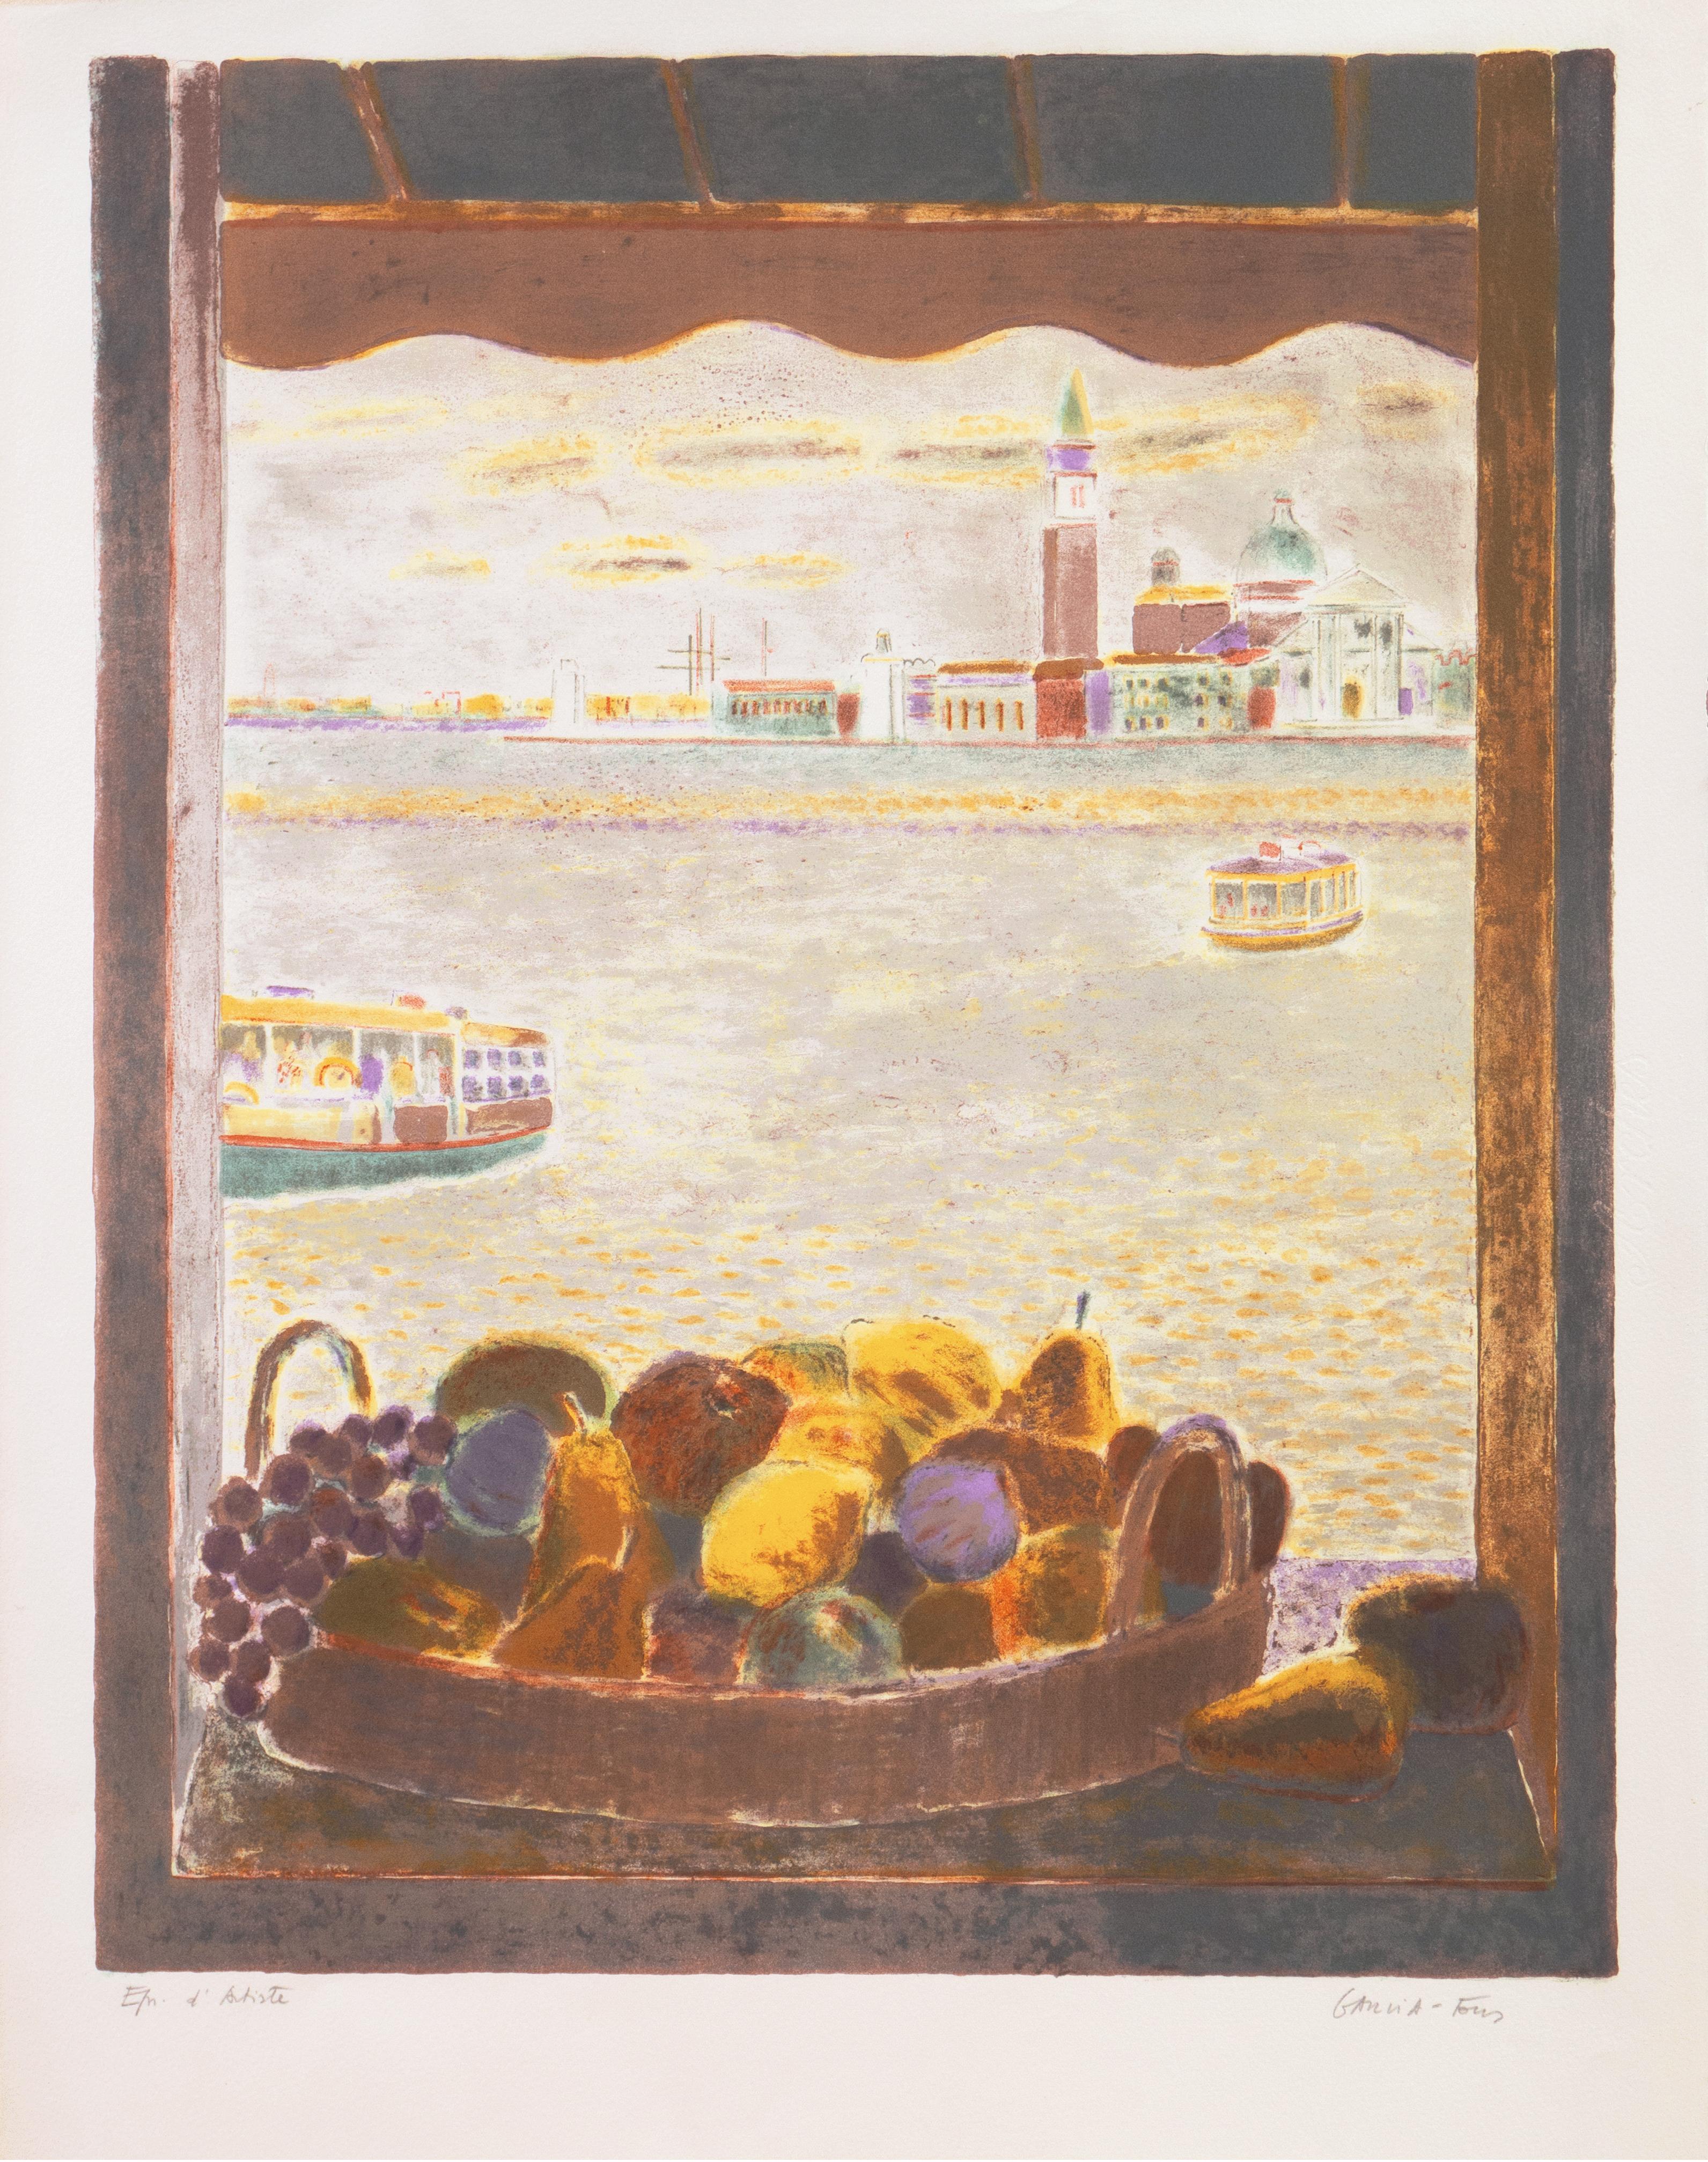 'View Across the Lagoon Venice', Academie Chaumiere, MAM Paris, Benezit - Print by Pierre Garcia Fons